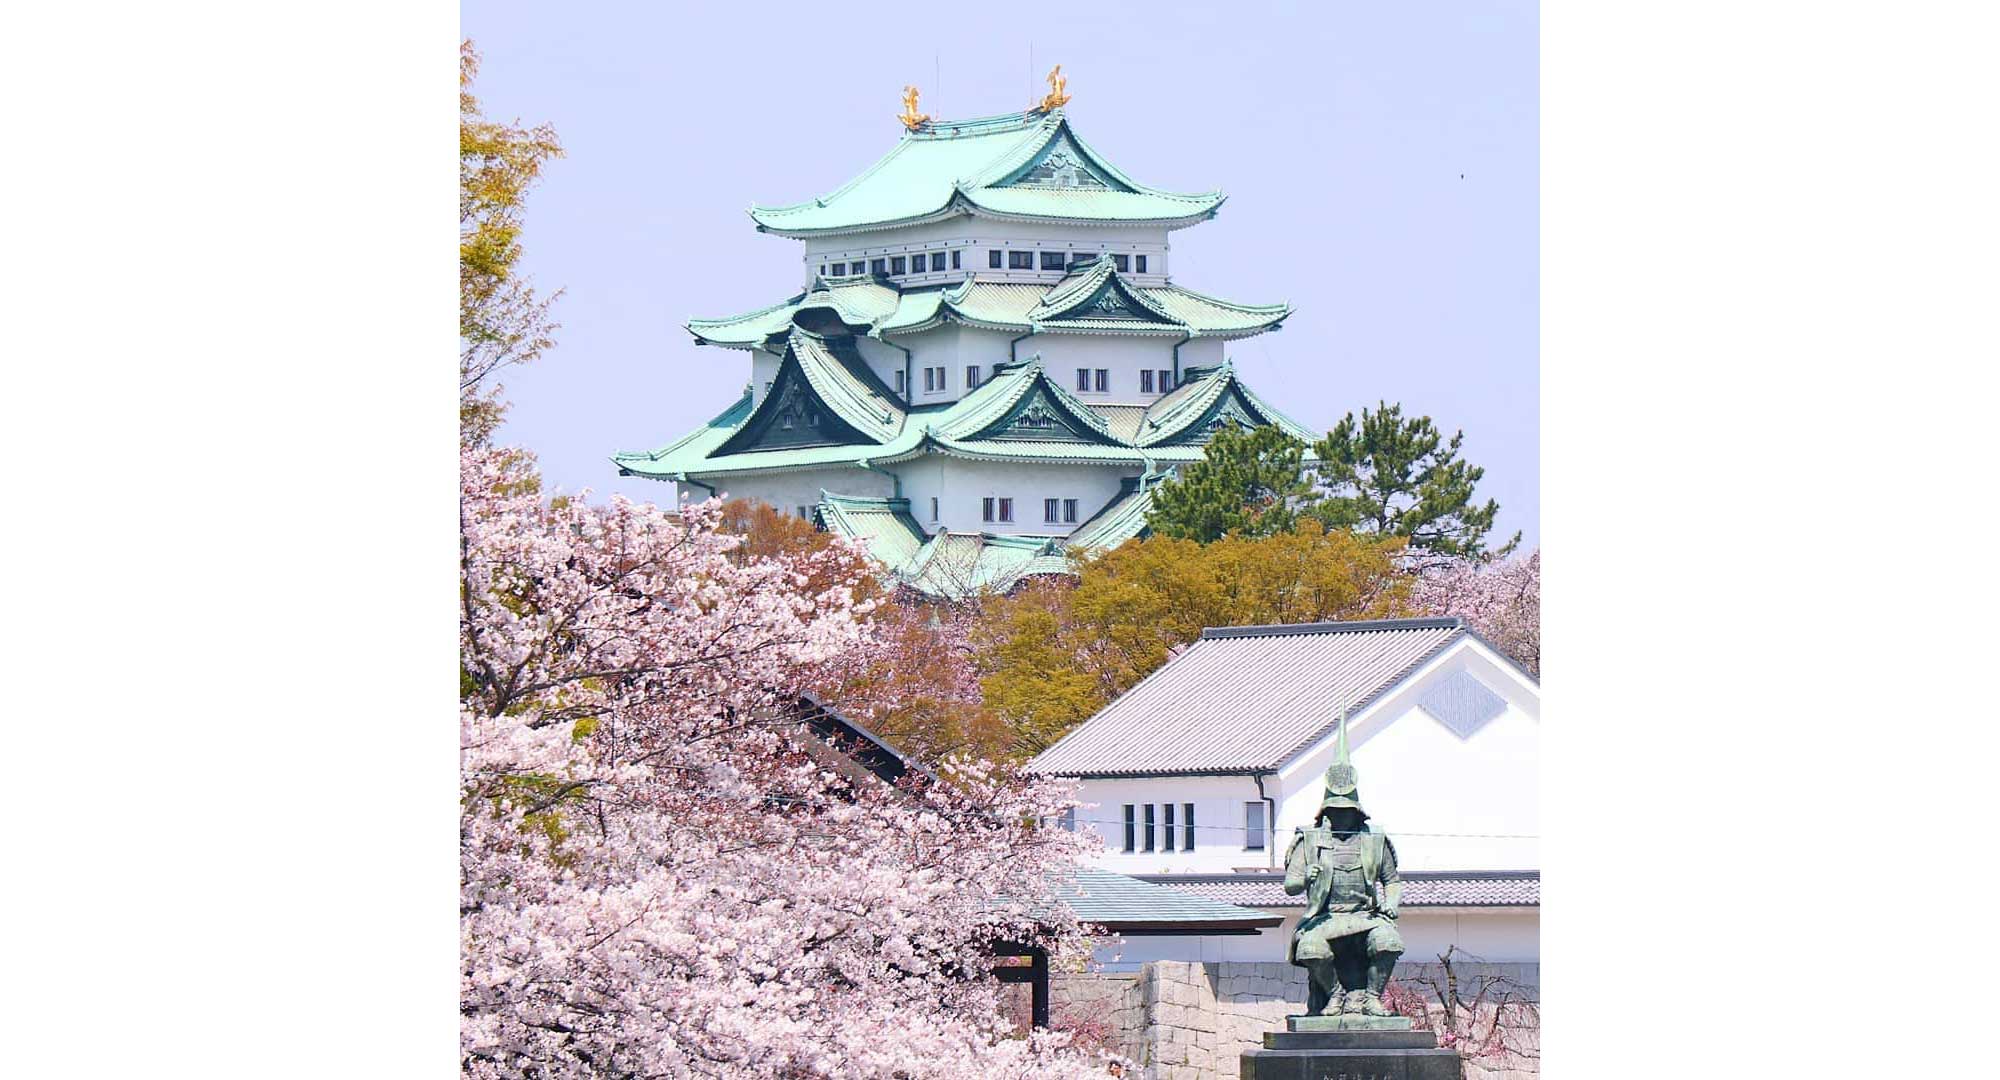 日本3大名城のひとつに数えられています